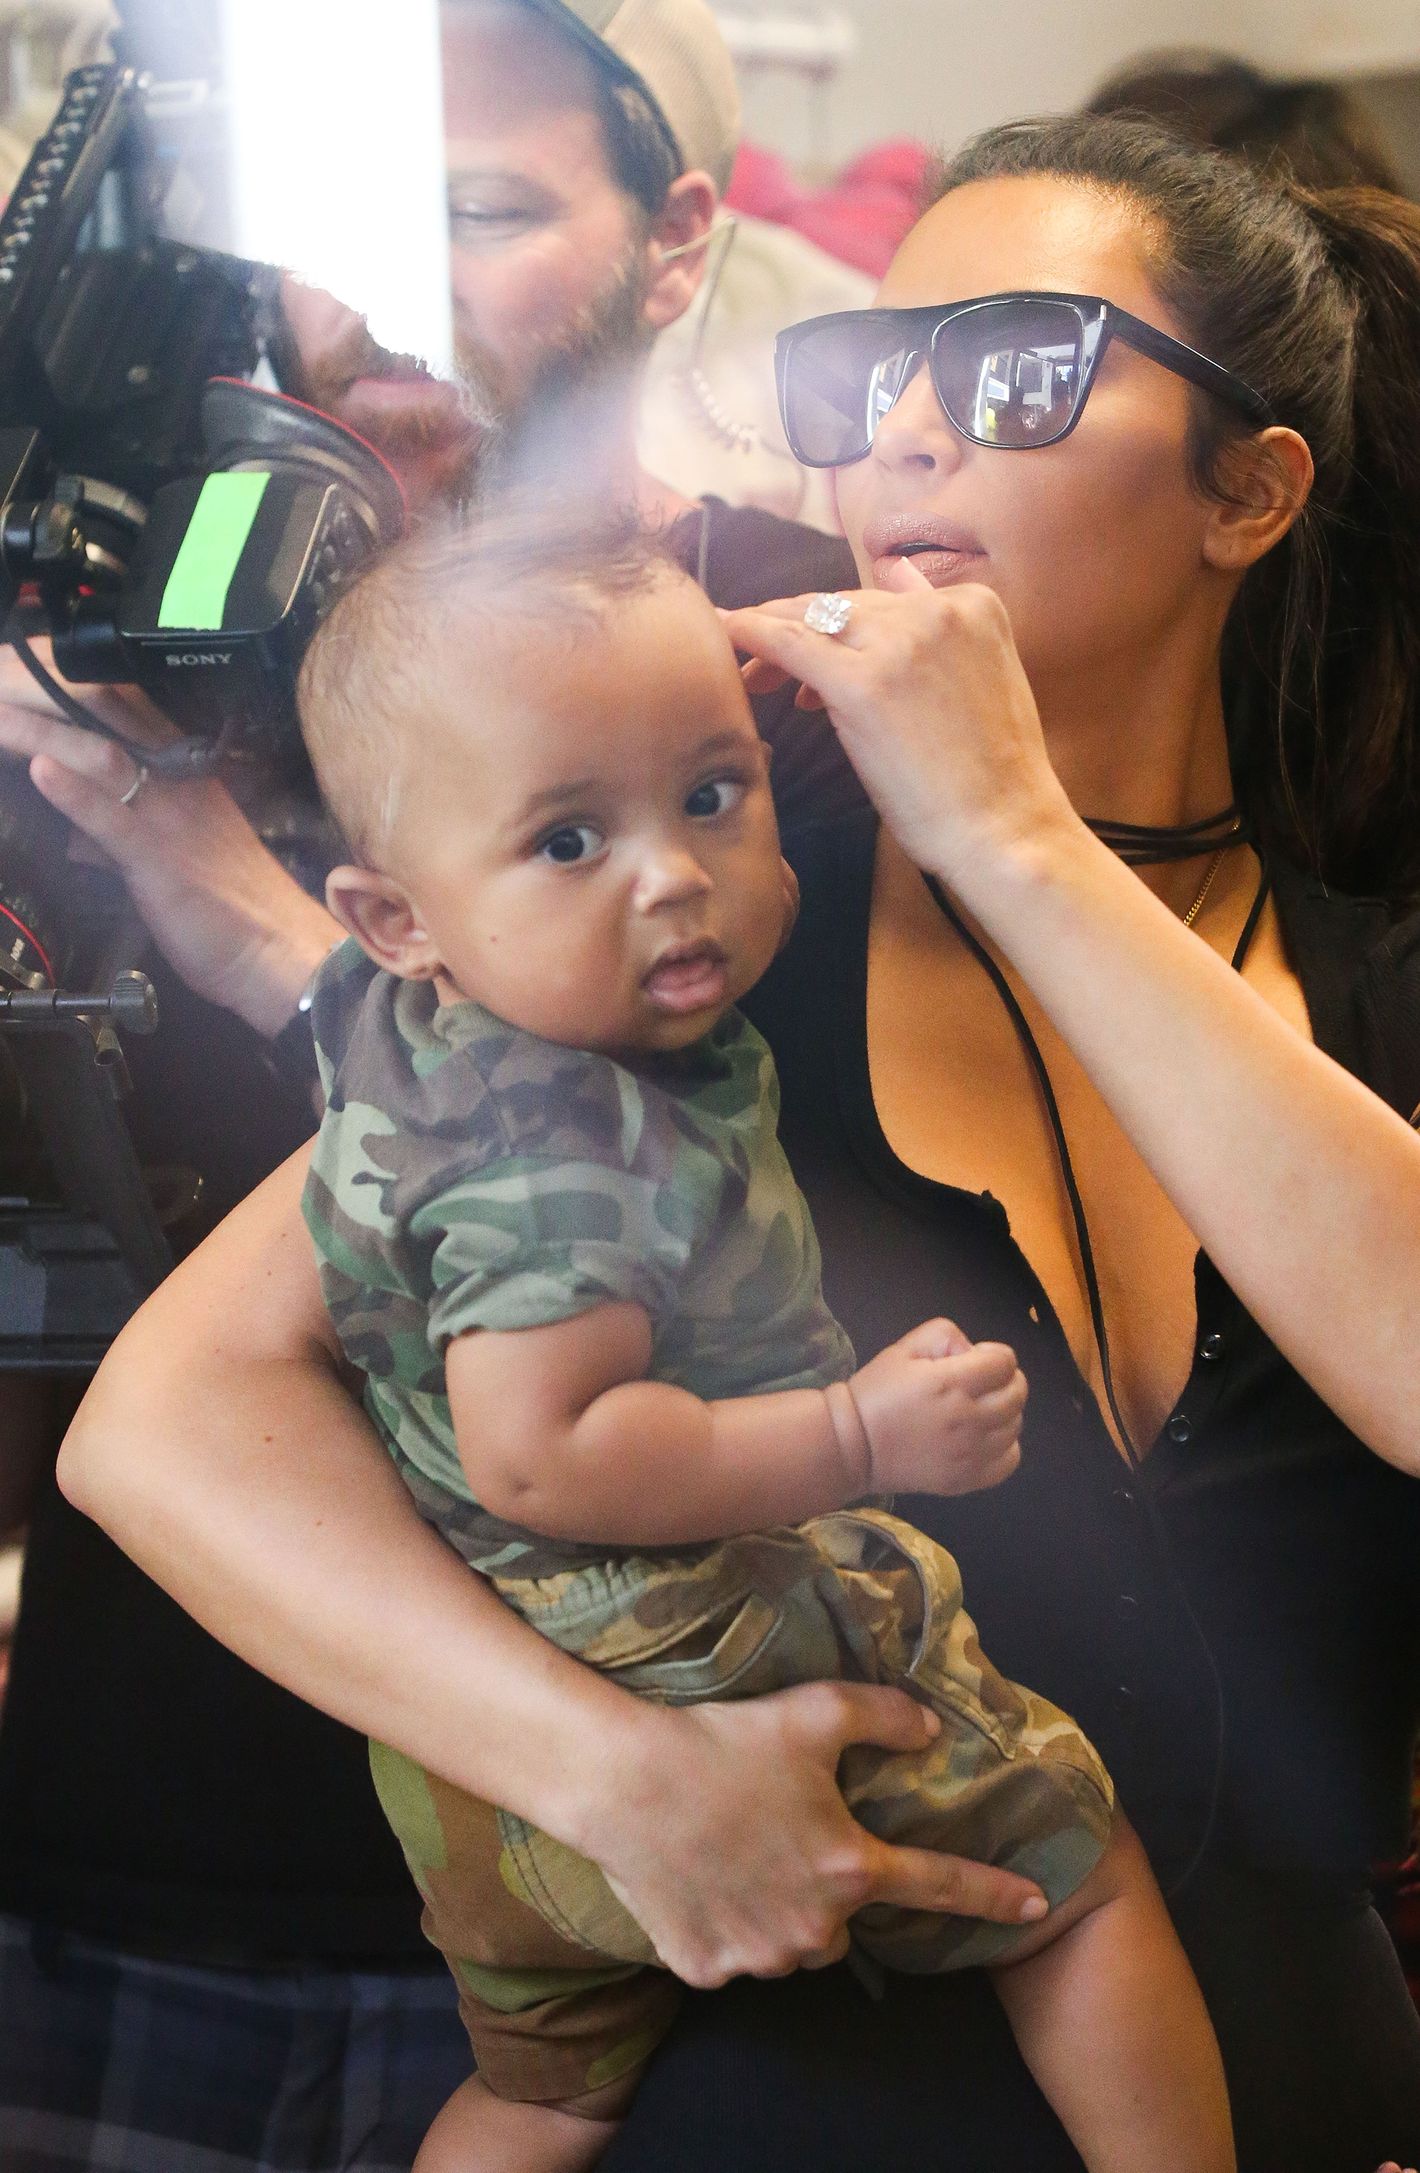 Kim Kardashian West splashes cash on new baby